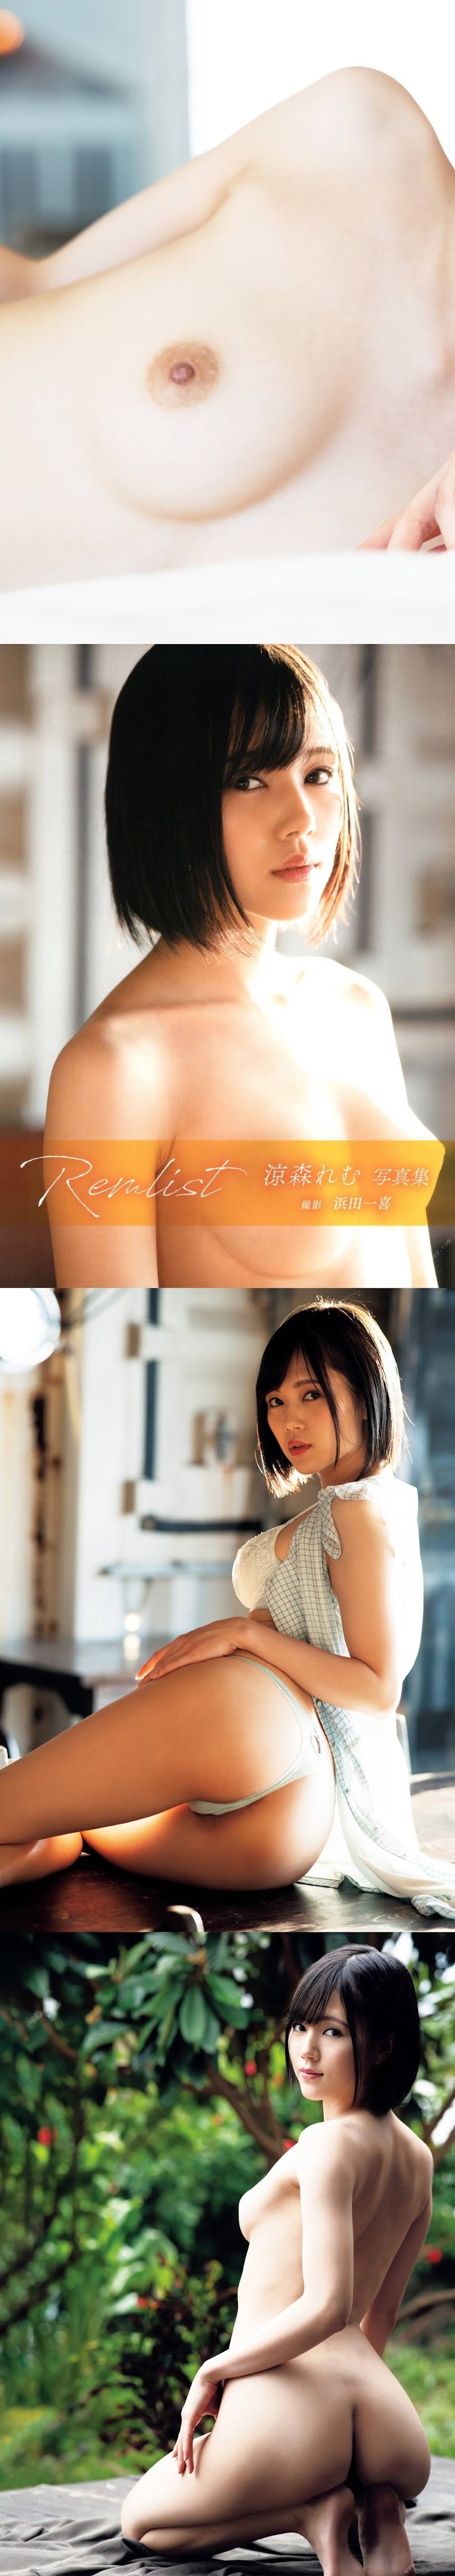 [Photobook] Remu Suzumori 涼森れむ - Remlist (2020-01-21)   P215302